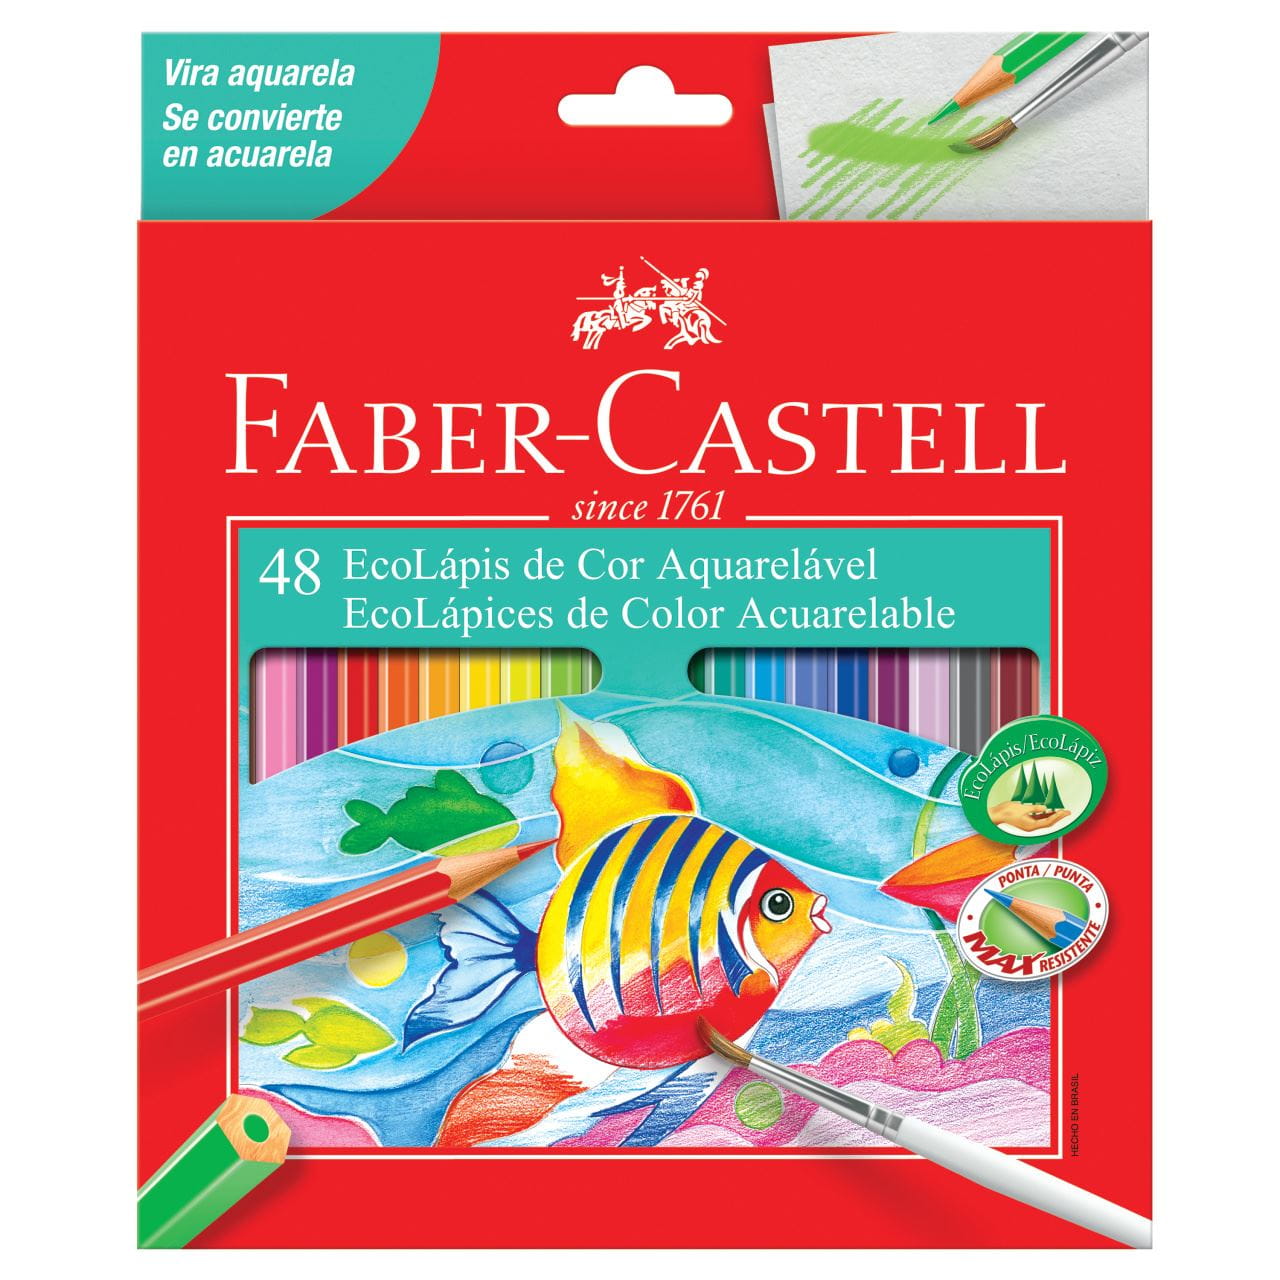 Faber-Castell - Ecolapis de Cor Aquarelavel  48 Cores